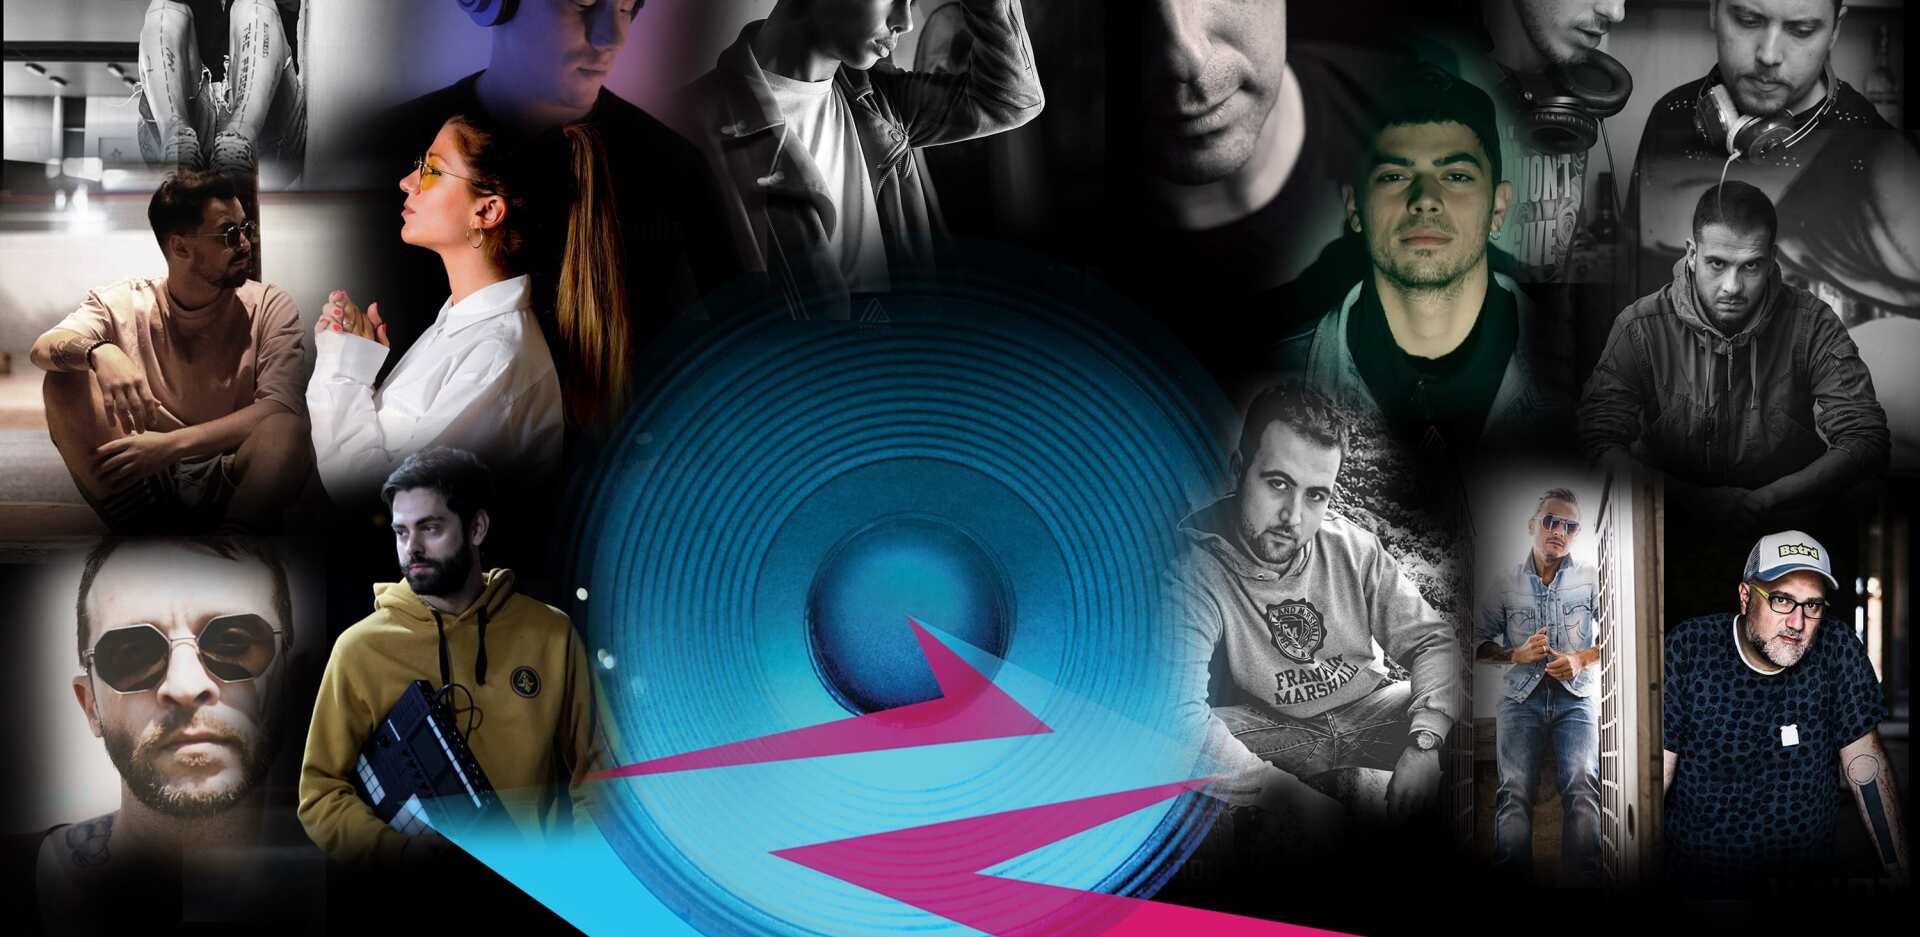 Οι DJs που συμμετέχουν στη συλλογή ηλεκτρονικής μουσικής Sub Sessions της Upfilter Records